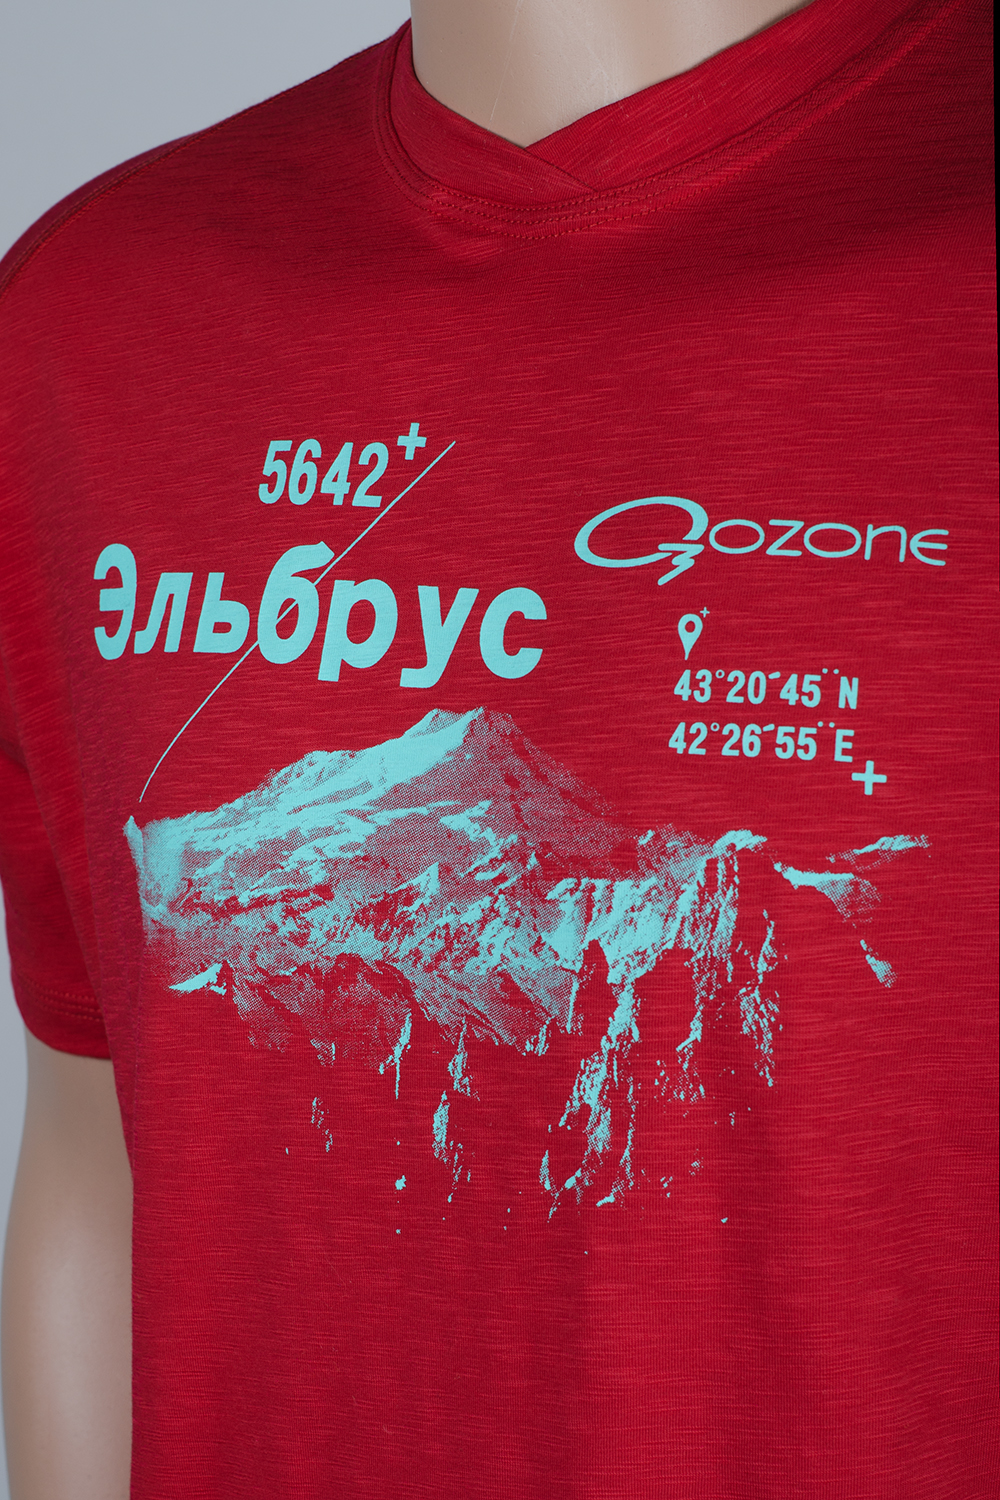 Озон футболки с надписями. Футболка Эльбрус. All Level футболки. Озон футболка открытое плечо. Футболки на Озон для мужчин.